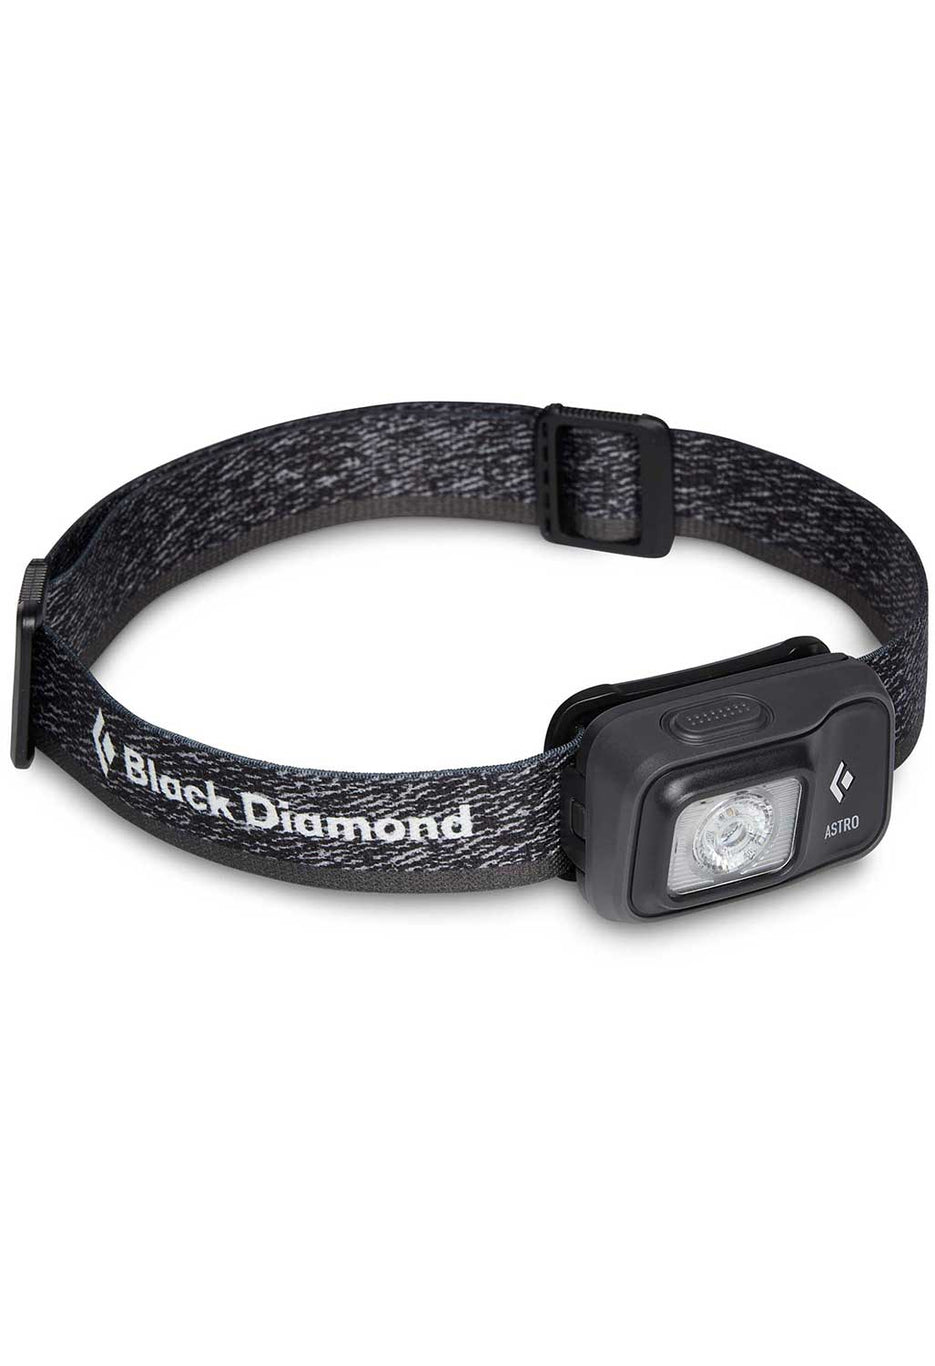 Black Diamond Astro 300 Head Torch 0